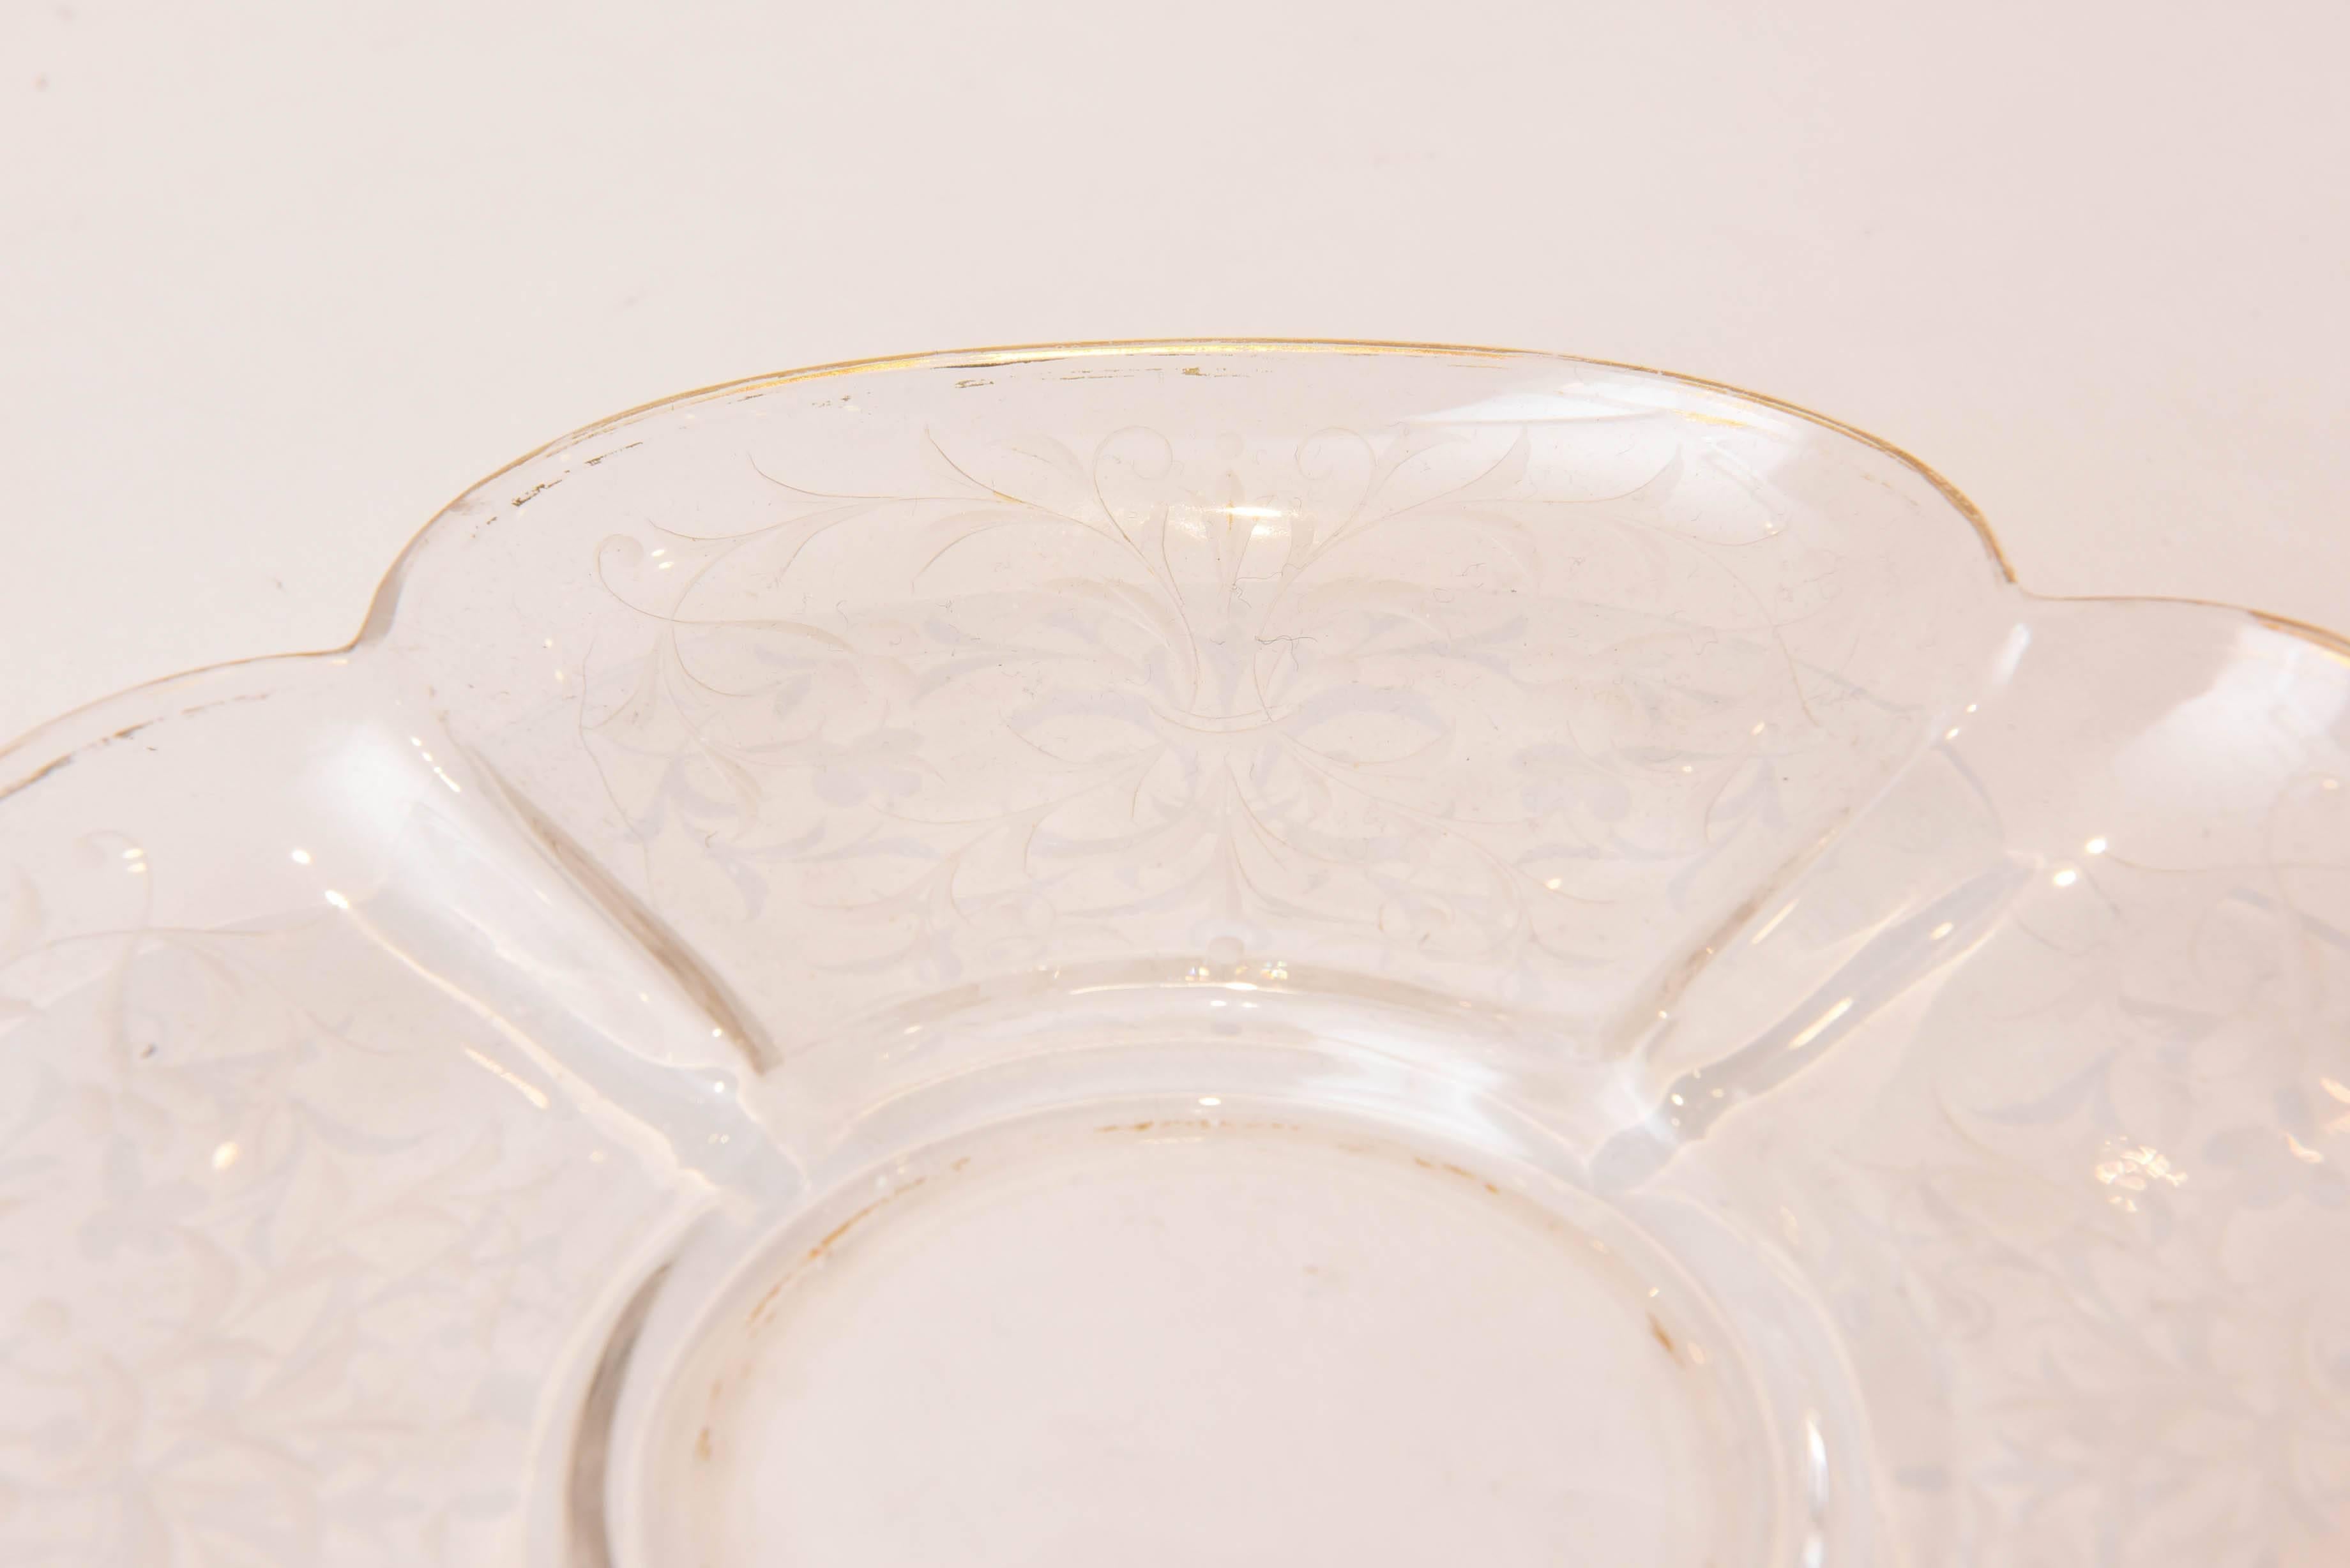 Blown Glass Ten Exquisite Sets of Antique Moser Quatre Foil Bowls with Underplates